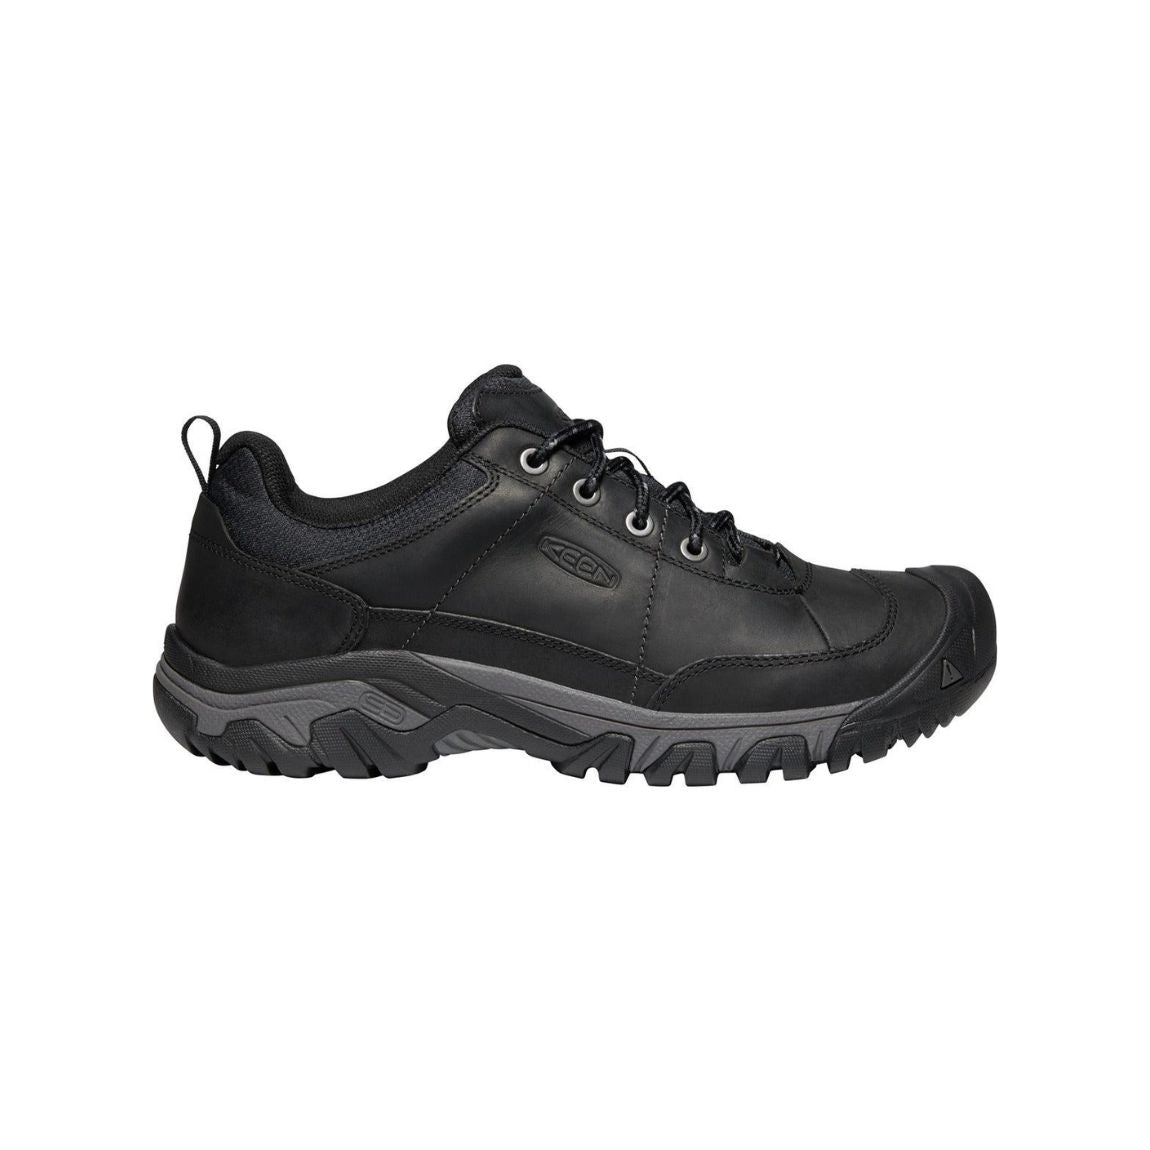 Keen Targhee III Oxford Hiking Shoes - Men